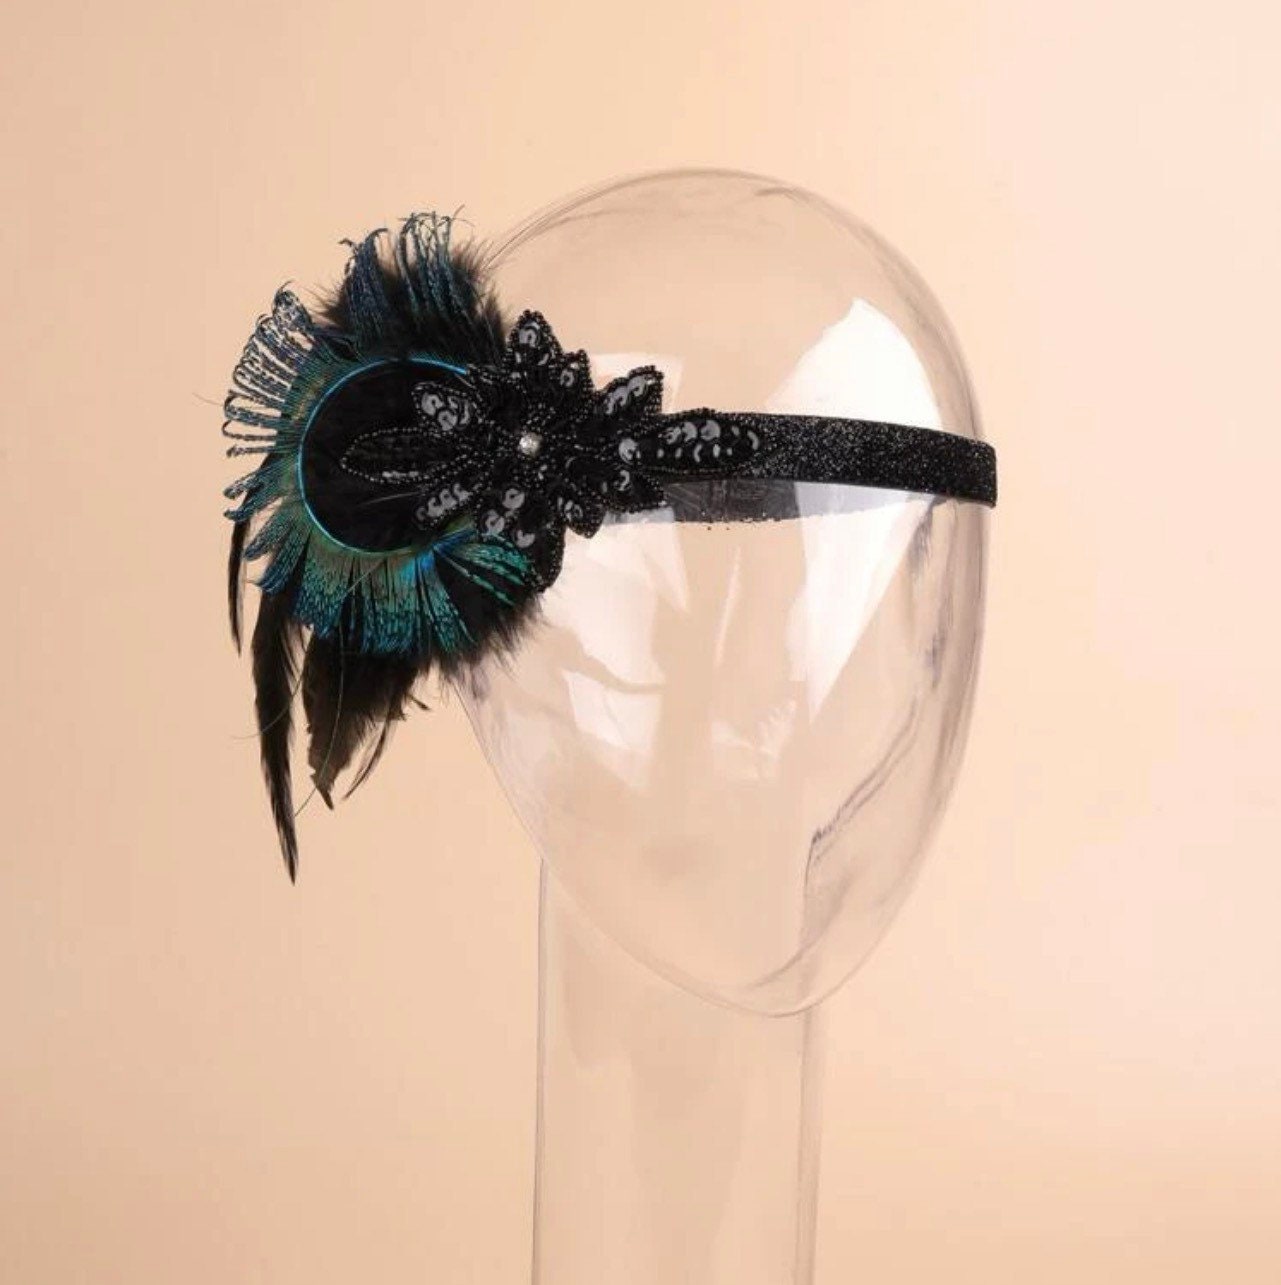 Peacock Feather and Sequin Headband - Halloween Headpiece, Halloween Costume, Feather Headpiece, Flapper Headband